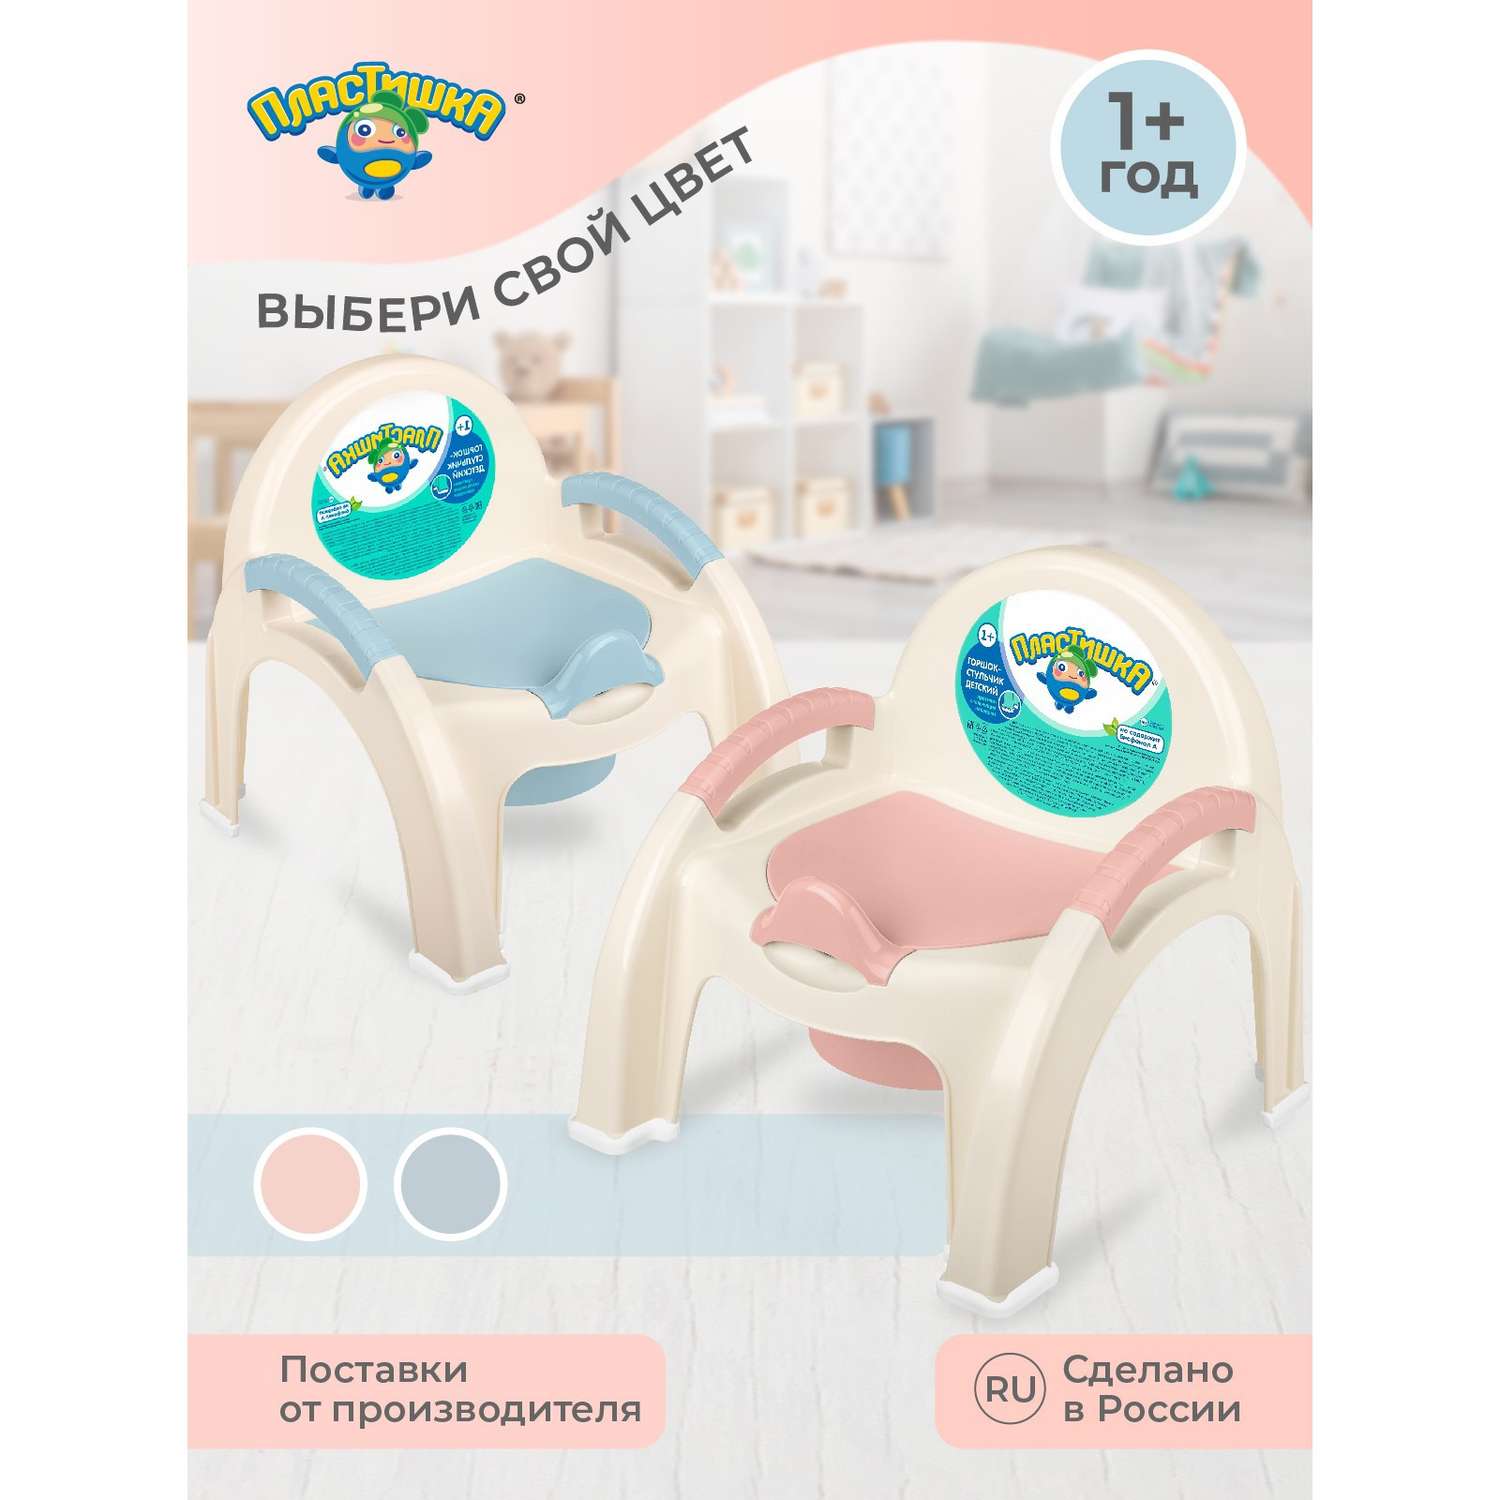 Горшок- стульчик Пластишка с крышкой цвет светло-голубой - фото 4